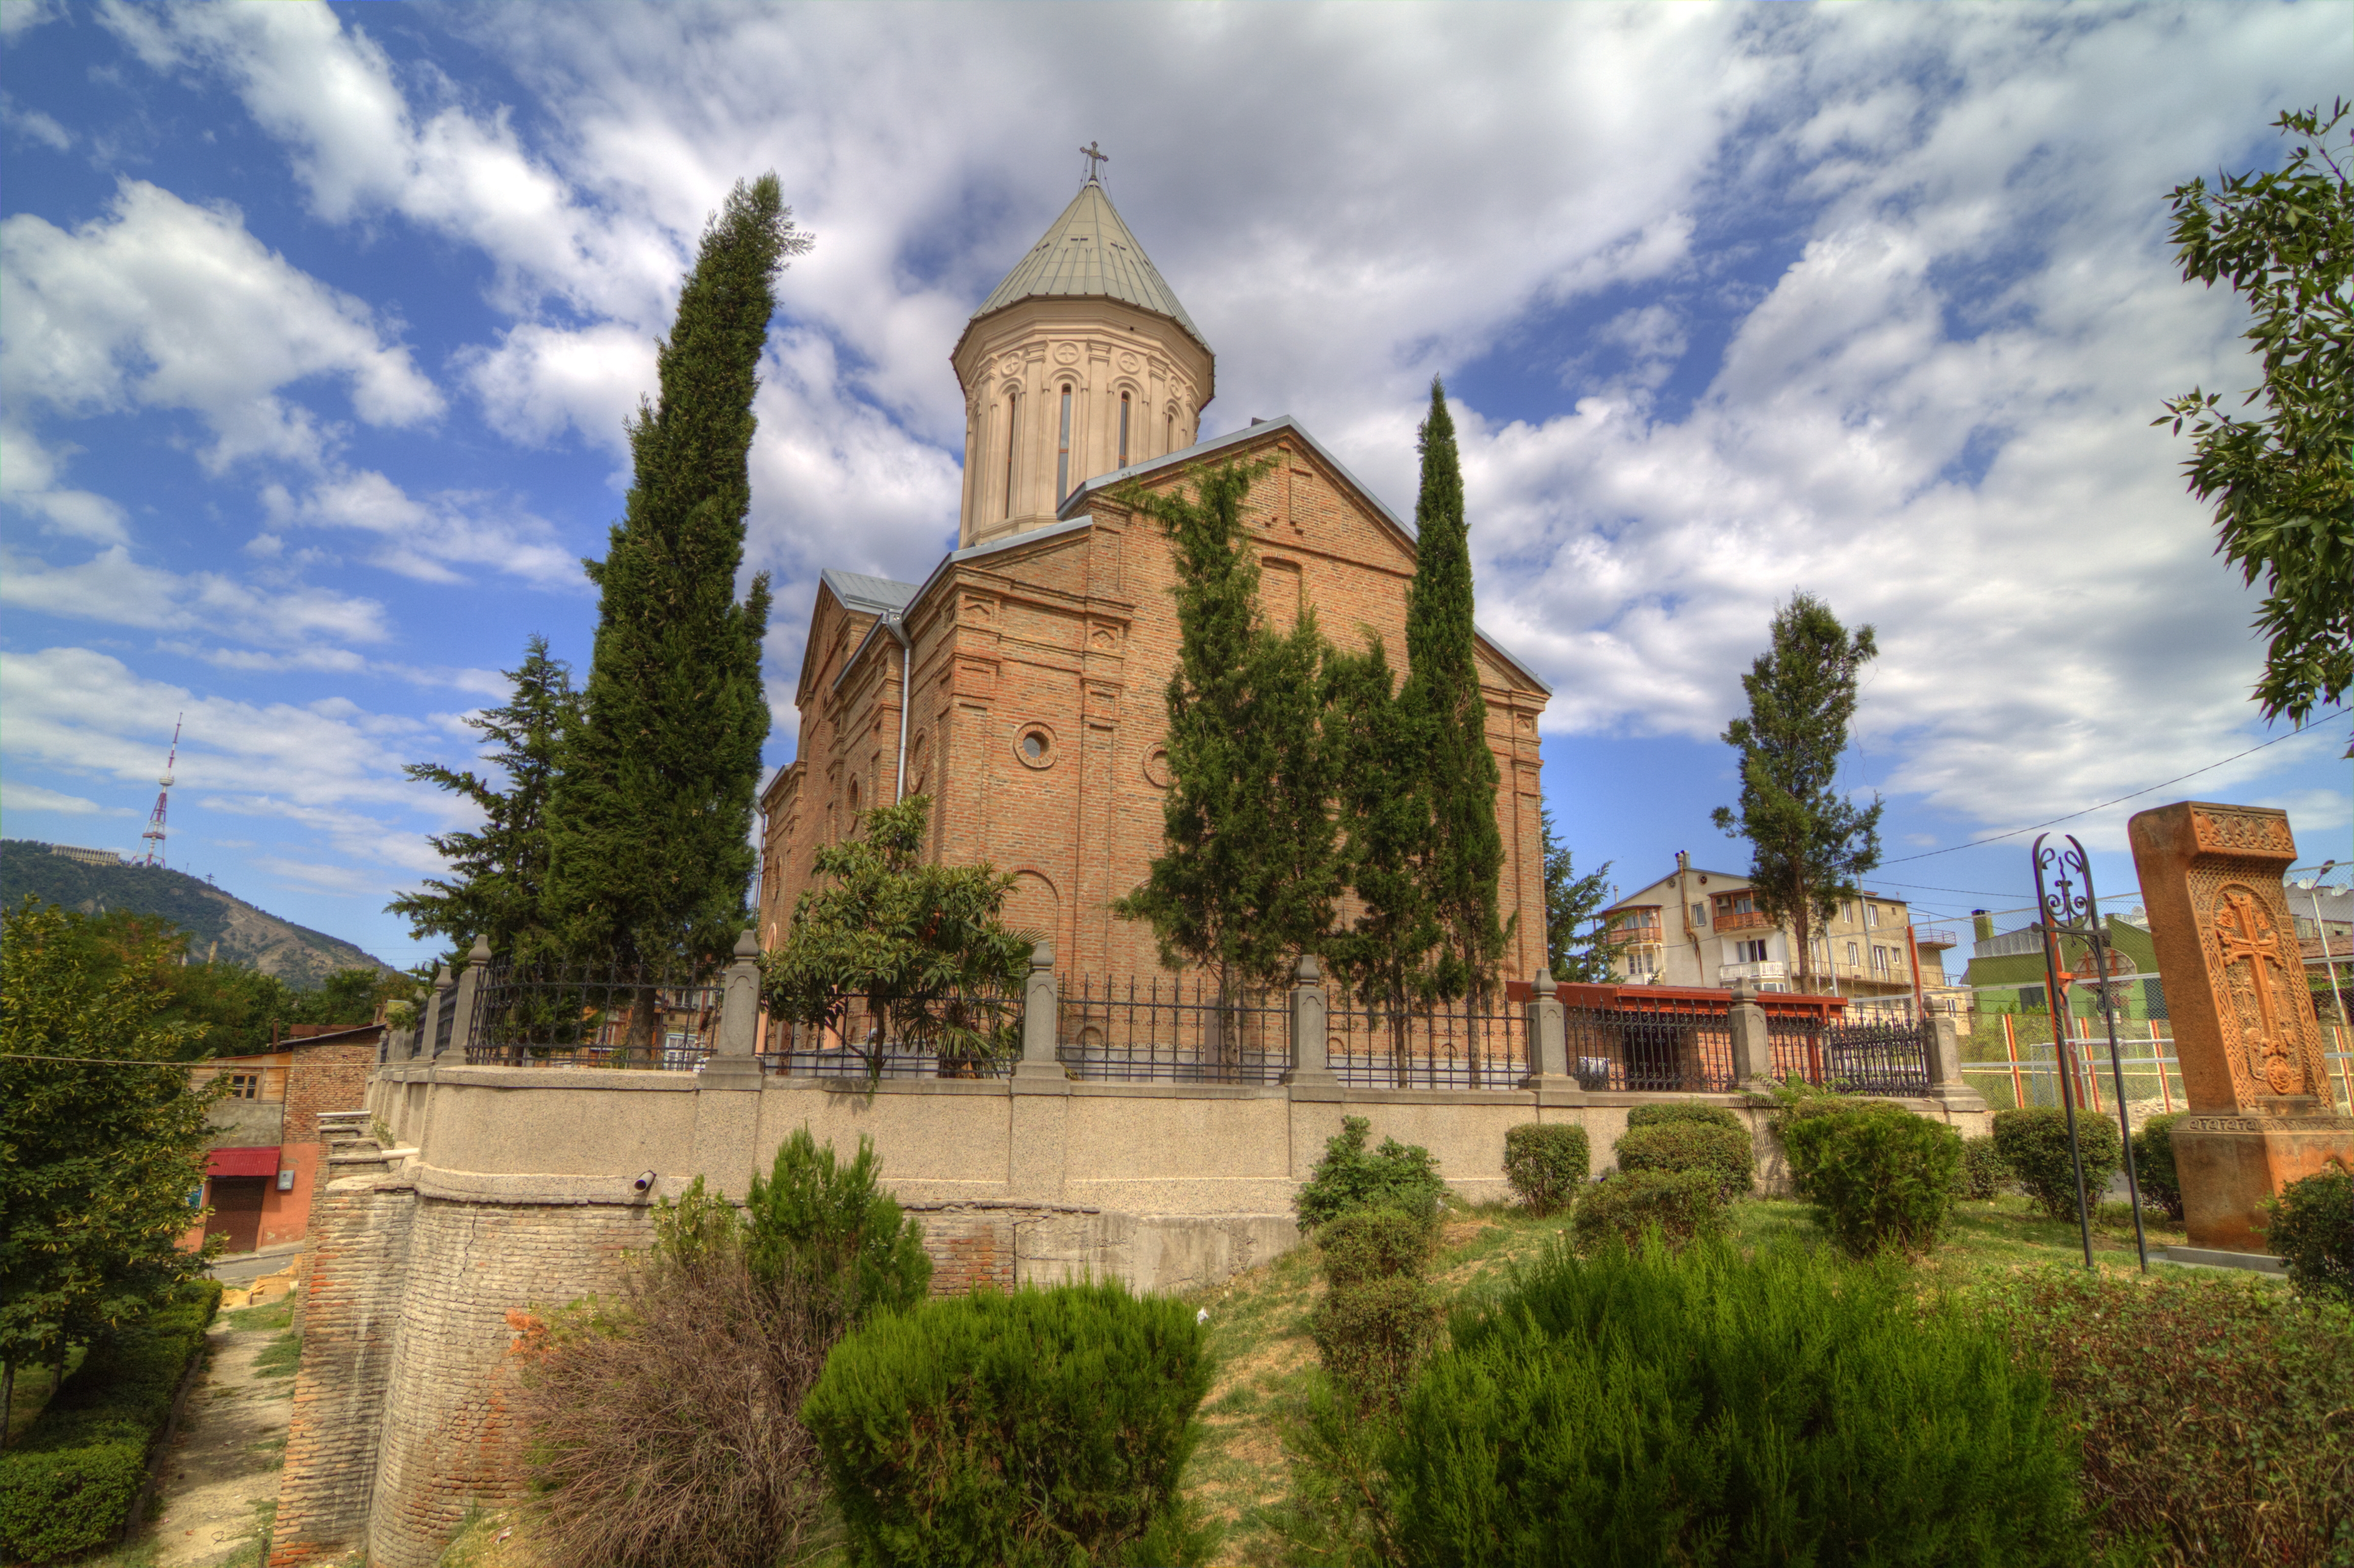 Թբիլիսիի հայկական եկեղեցու վրա կատարված հարձակման փաստի առթիվ հարուցվել 
է քրեական գործ 